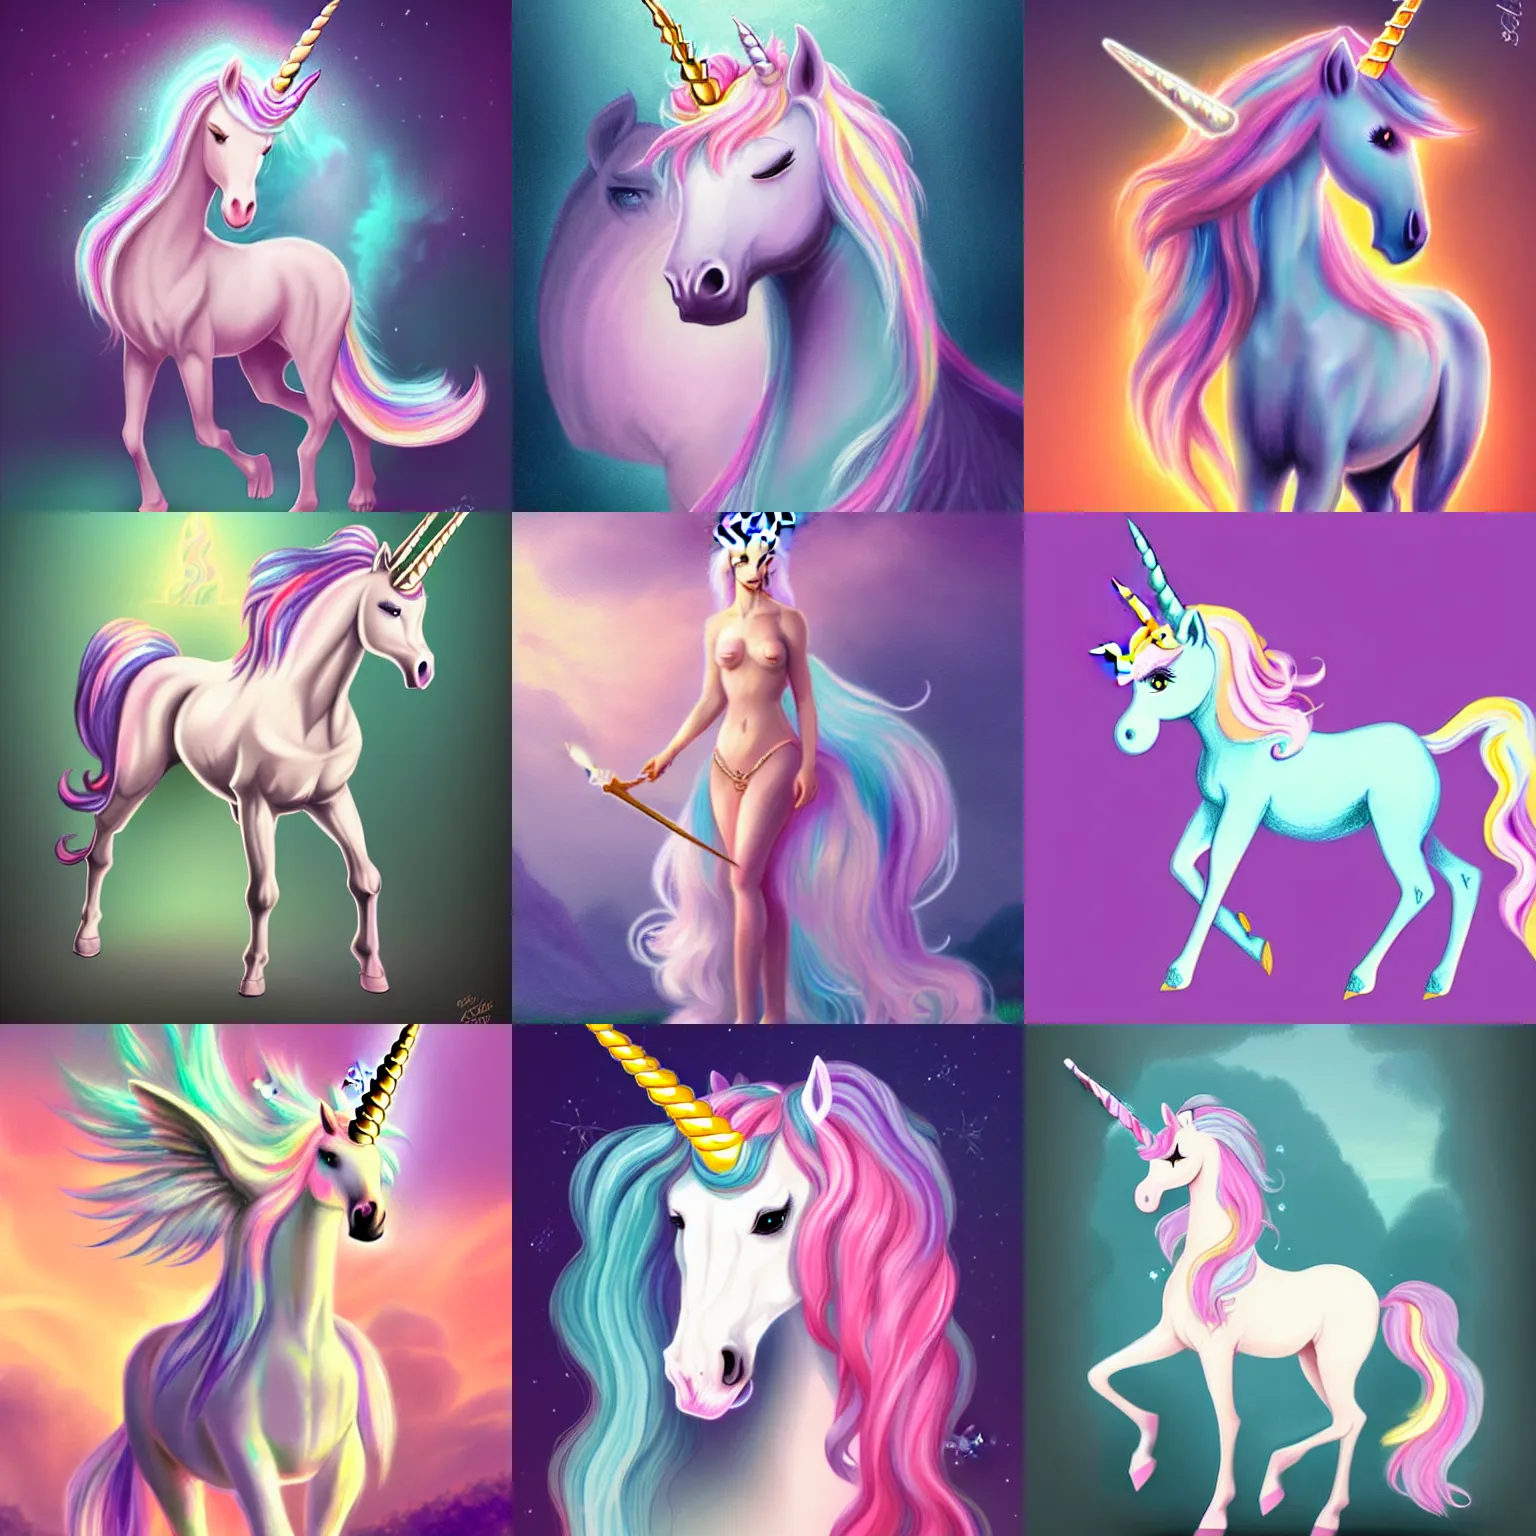 Prompt: unicorn centaur, concept art, elegent, pastel colors, character portrait, magic background, vintage fantasy, high detailed